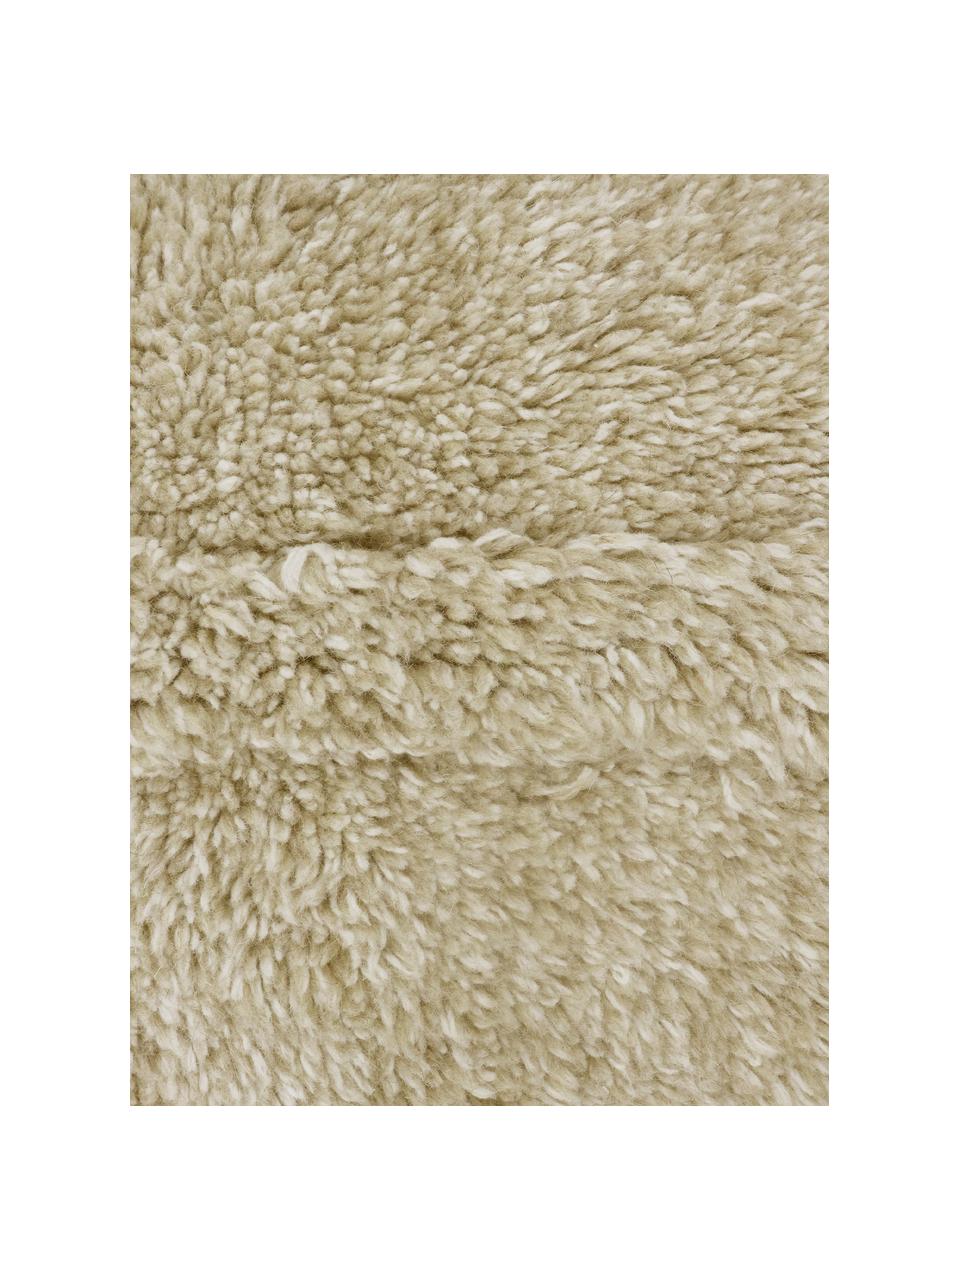 Tappeto in lana beige lavabile fatto a mano Tundra, Retro: cotone riciclato Nel caso, Beige, Larg. 170 x Lung. 240 cm (taglia M)